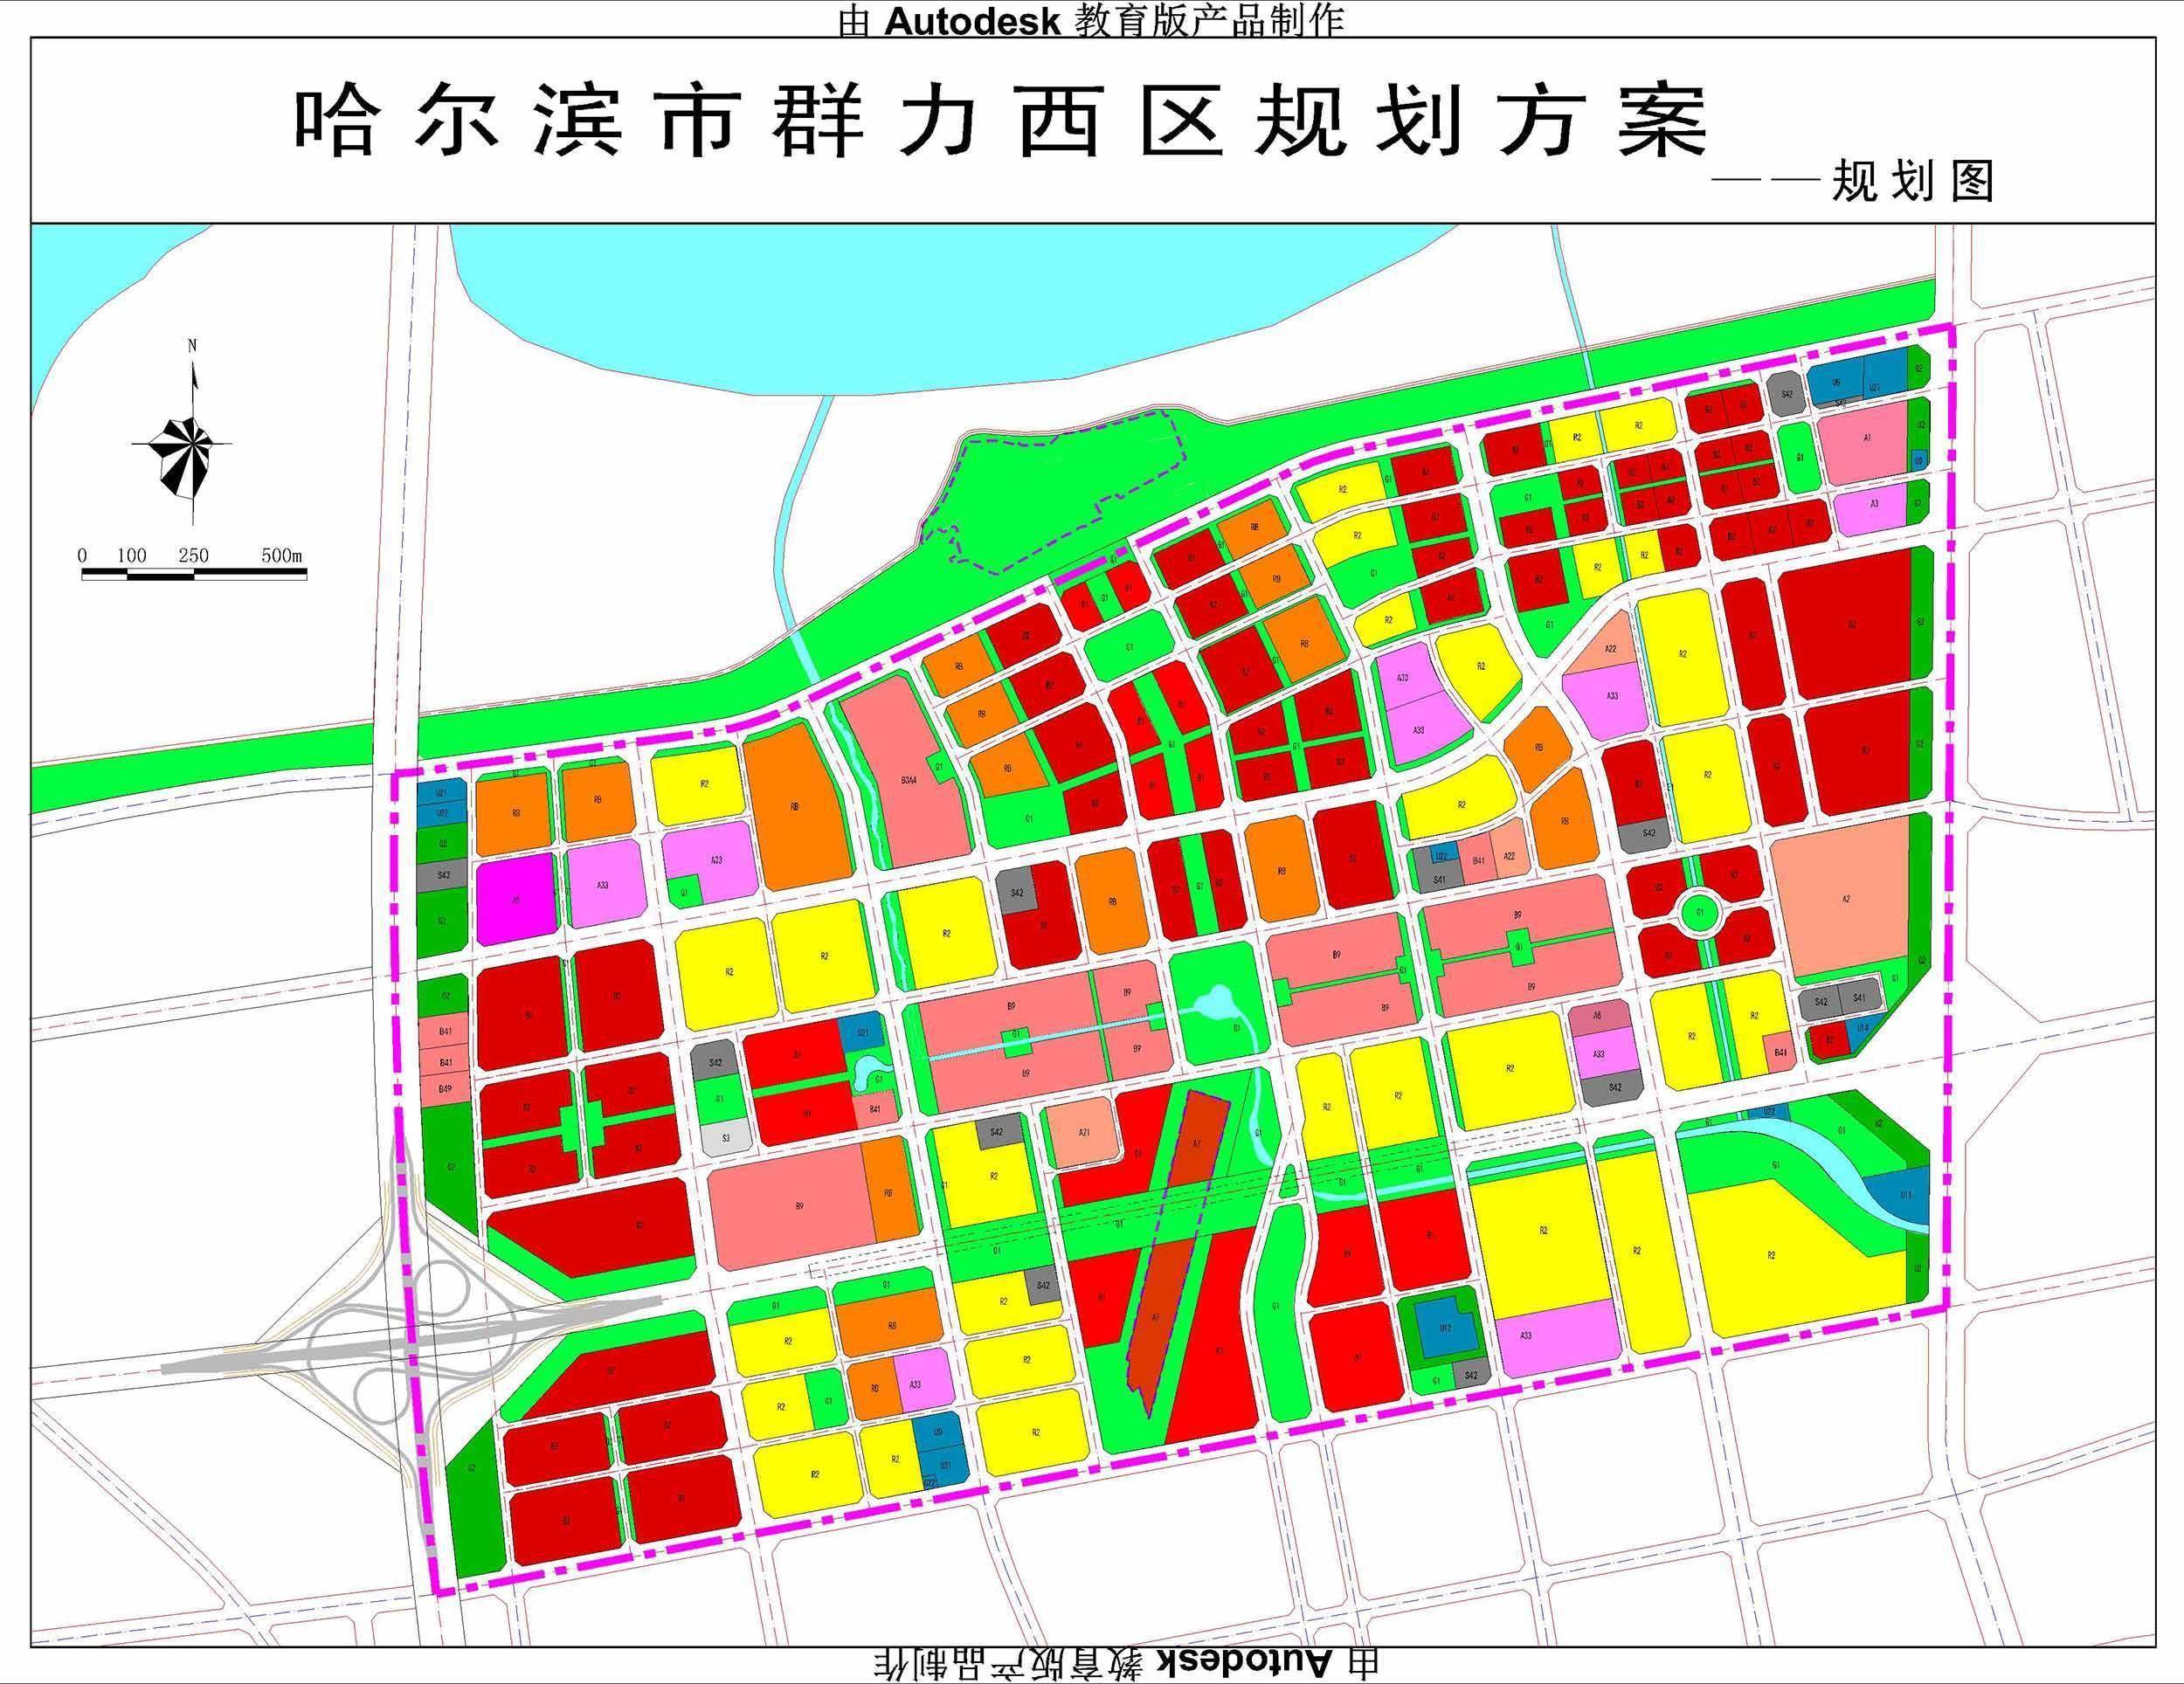 6969在《哈尔滨市群力西区土地利用规划公示》中提到,群力西区将